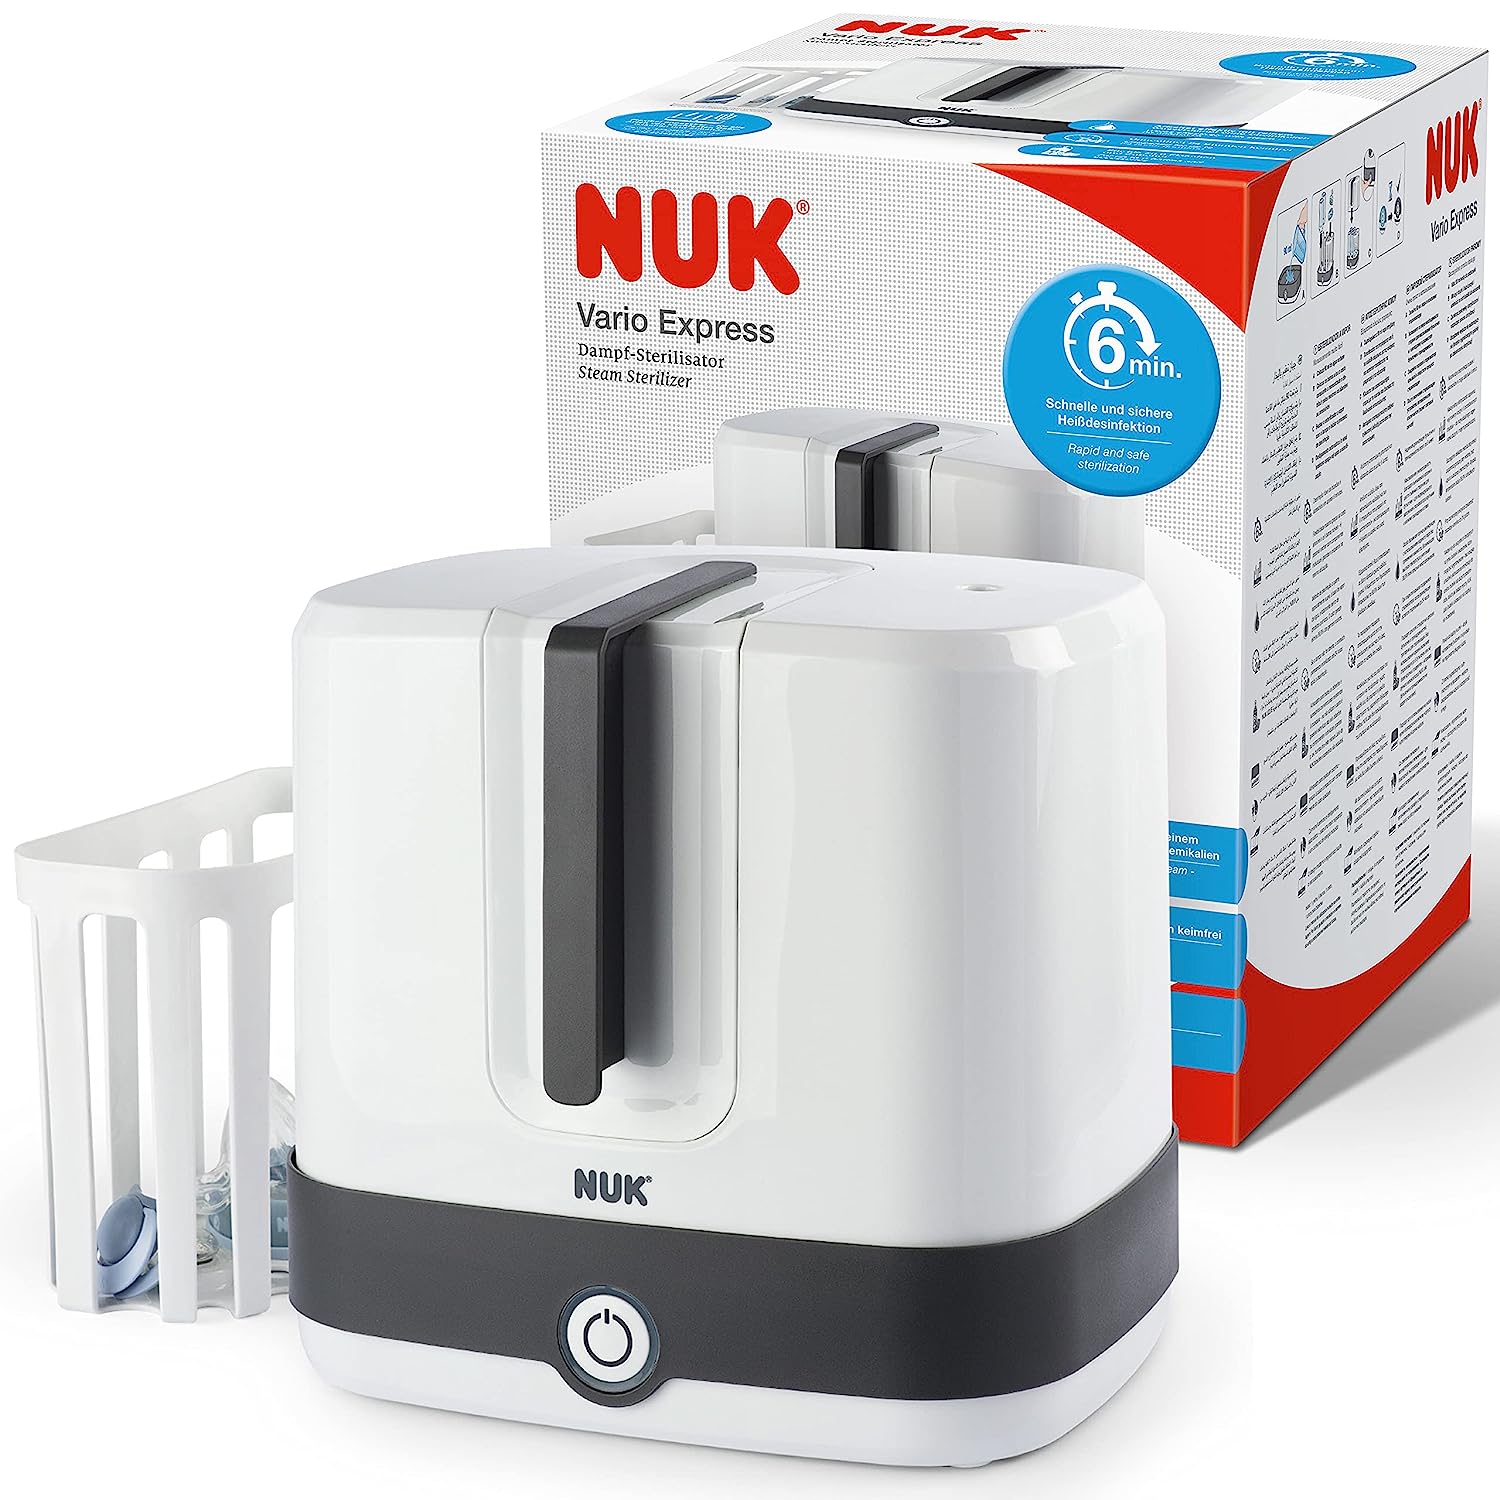 Bild zu NUK Vario Express Dampf-Sterilisator Modular für 39,99€ (Vergleich: 54,90€)